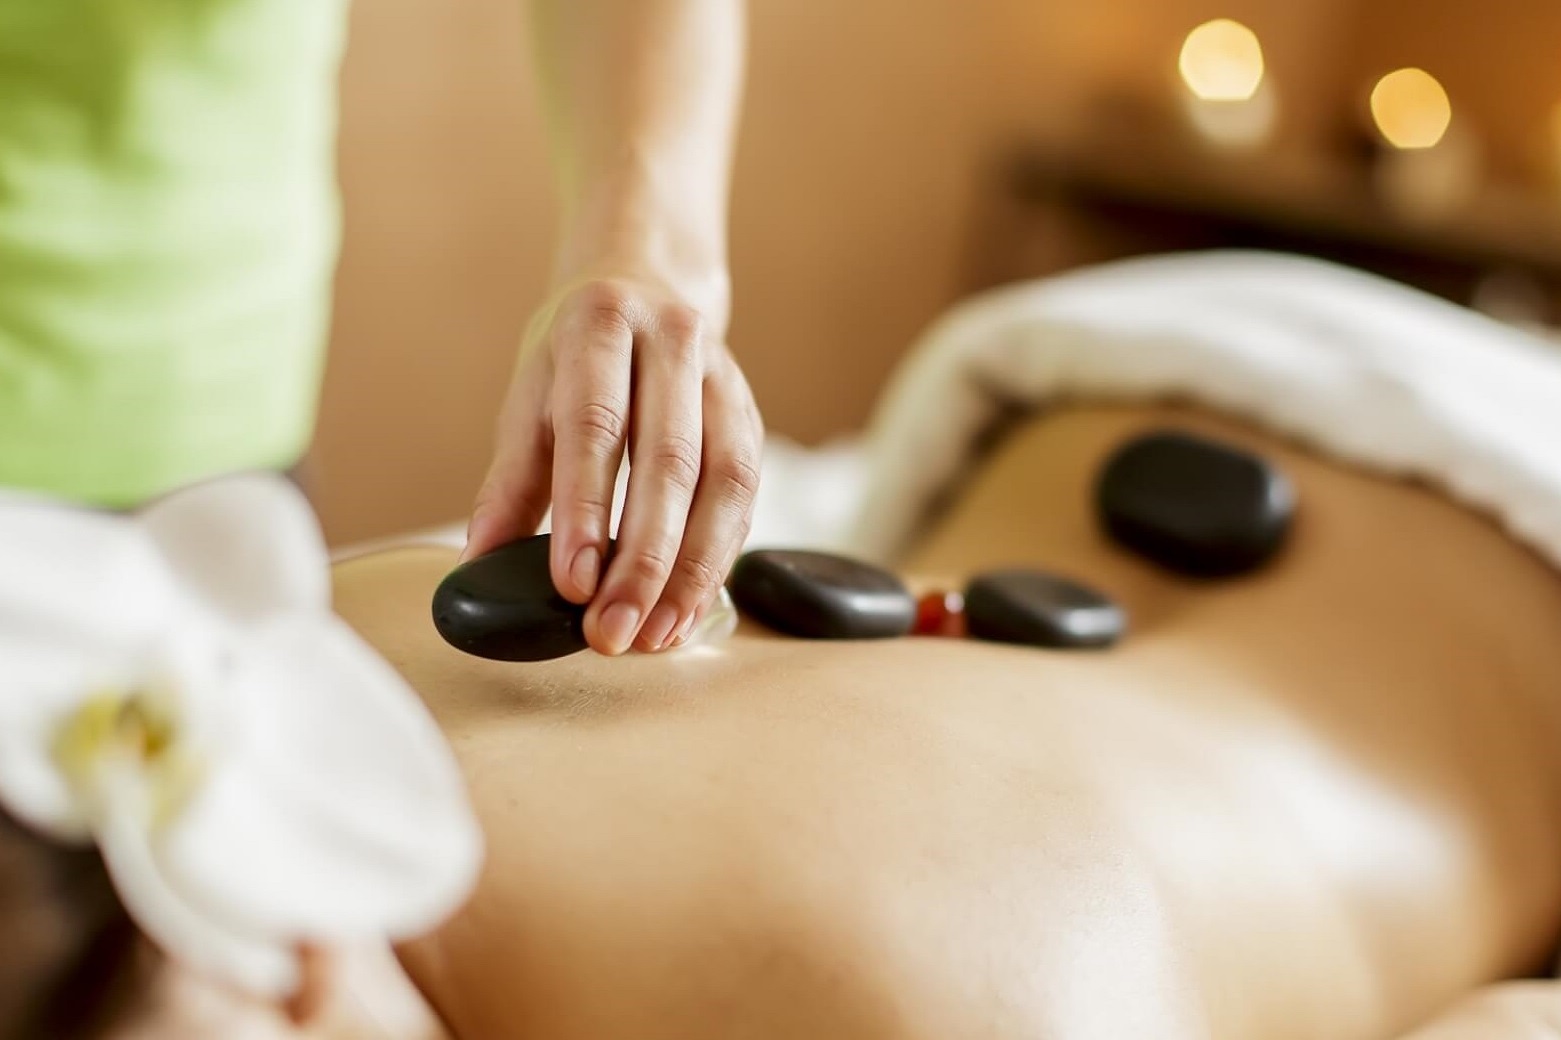 Massage đá nóng là biện pháp trị liệu cổ truyền bằng nhiệt độ cao